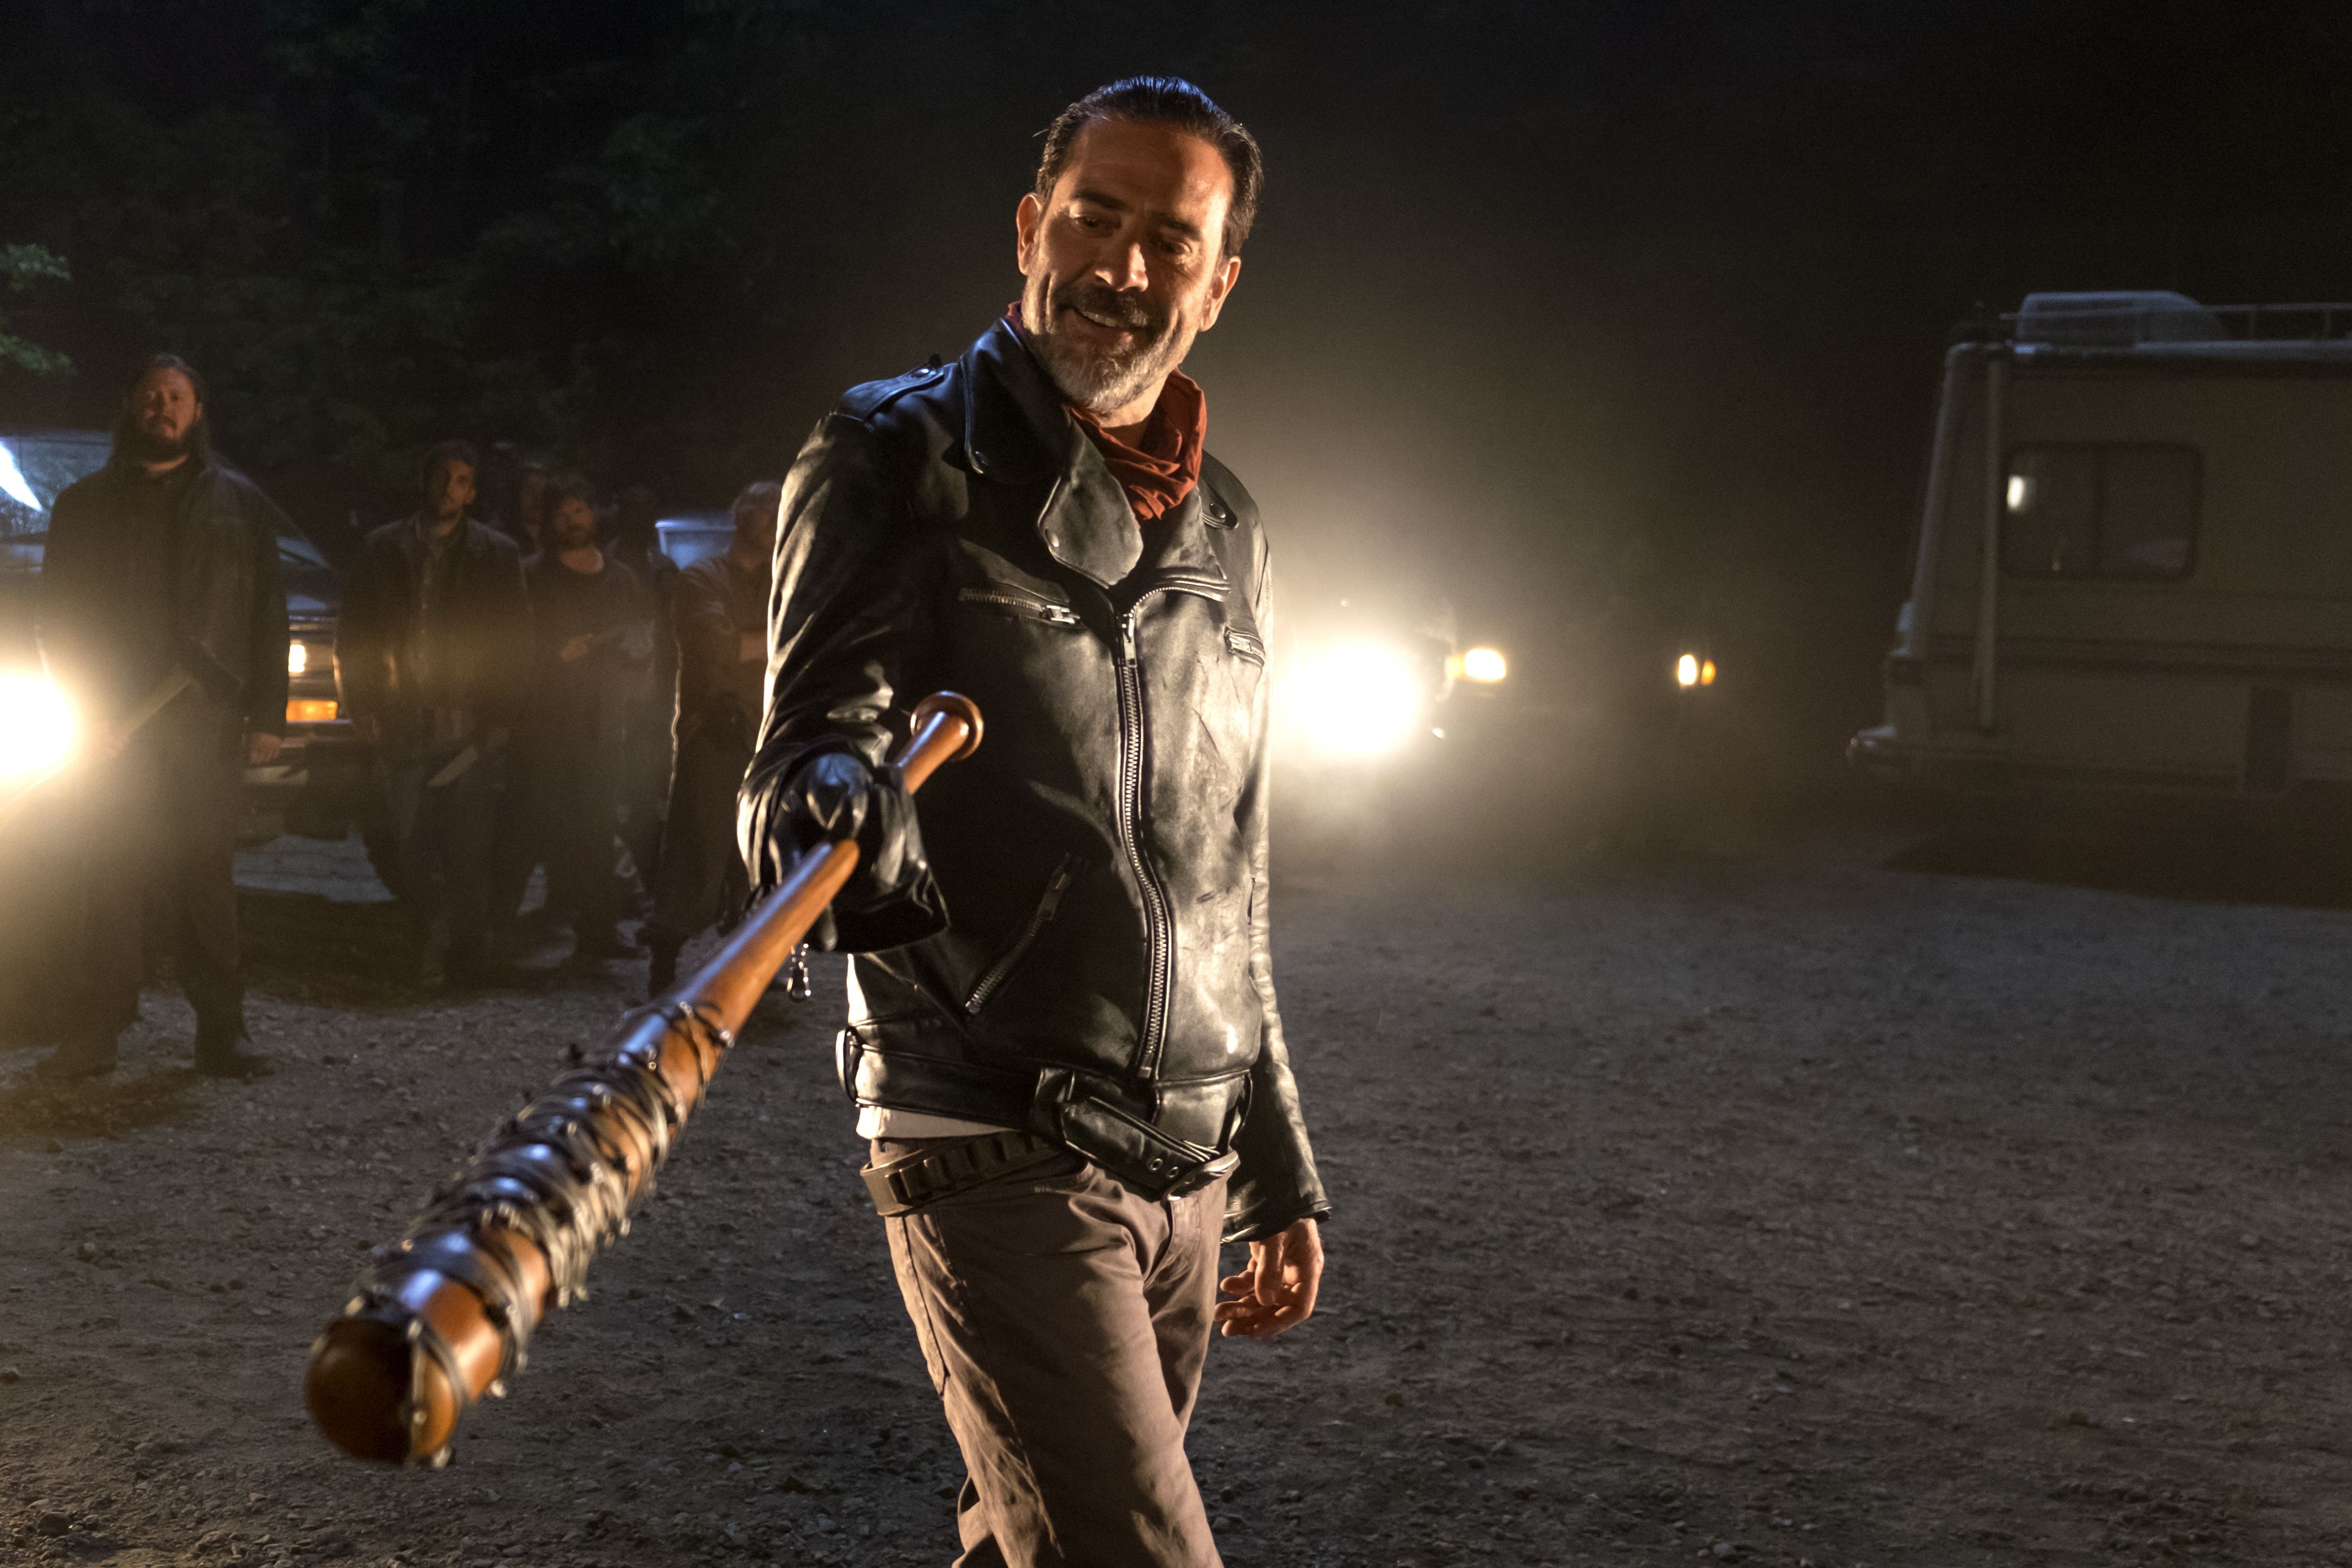 Download Negan The Walking Dead Season 7 HD 4k Wallpaper